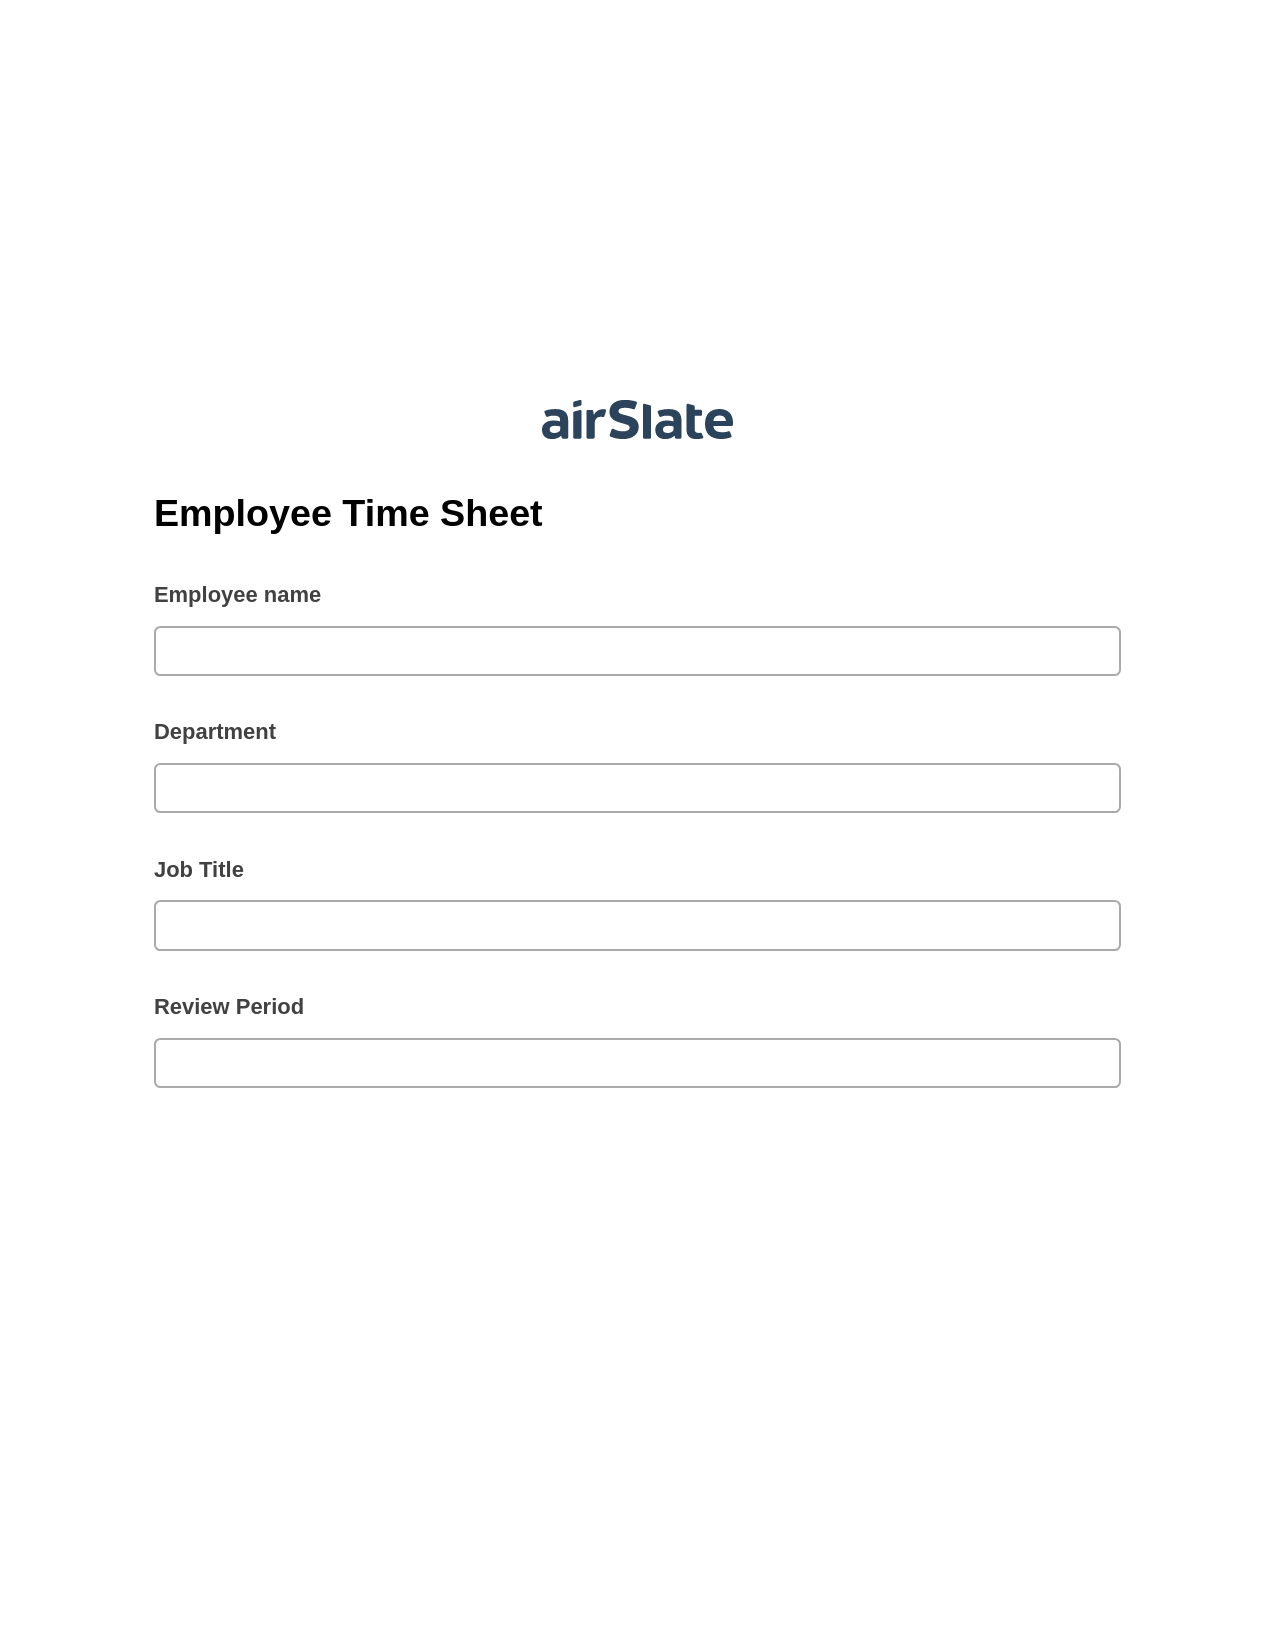 Employee Time Sheet Pre-fill from Salesforce Records Bot, Create Salesforce Records Bot, Export to Smartsheet